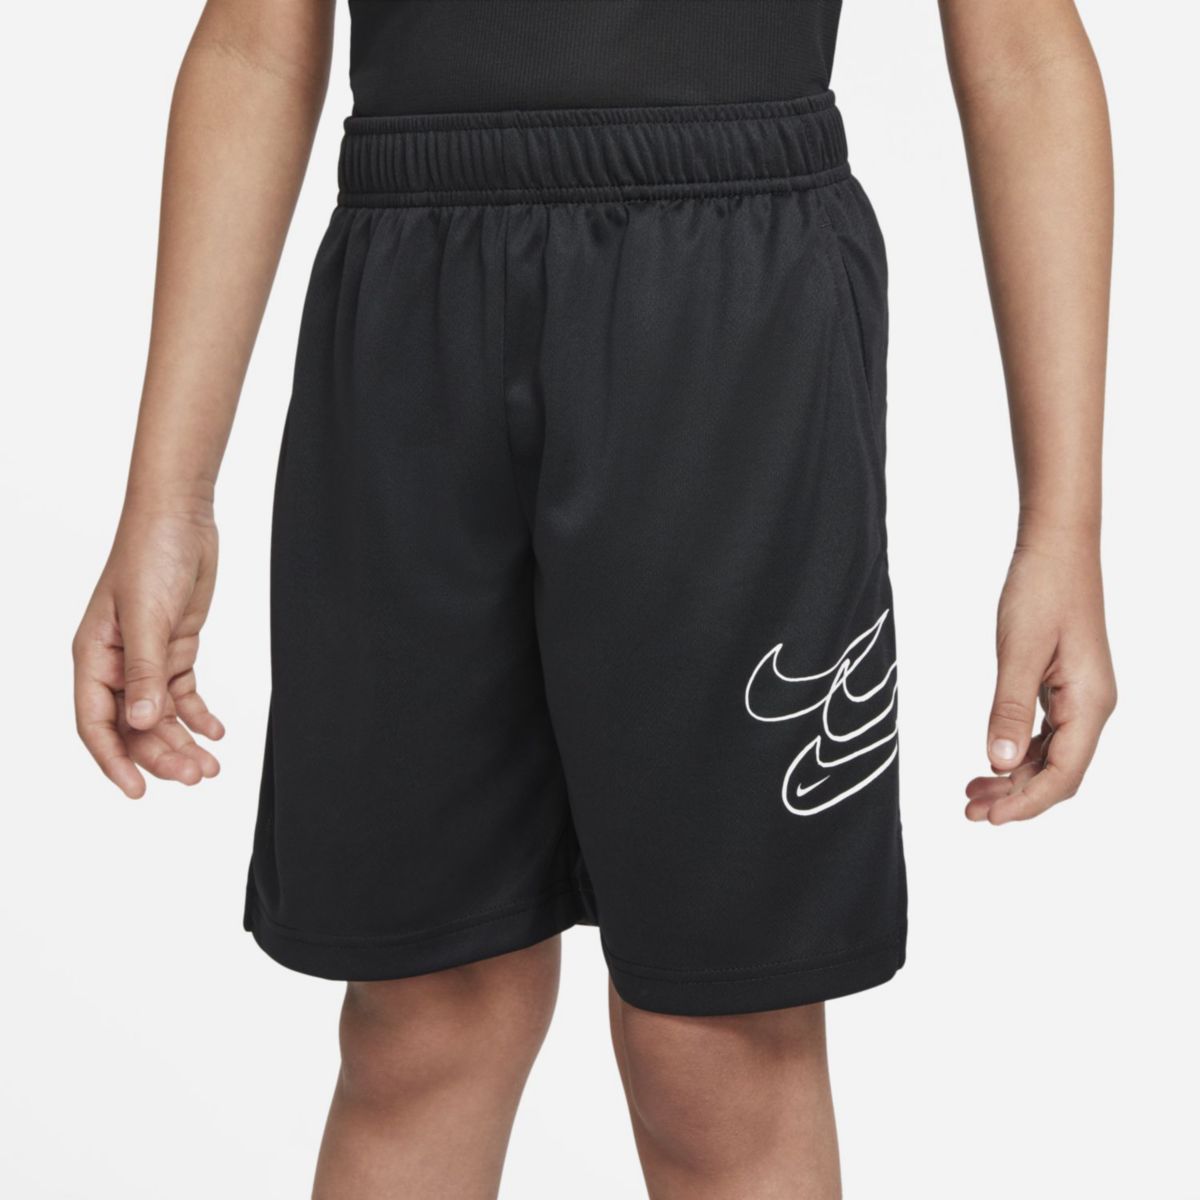 Тренировочные шорты. Nike Summer uniforms.